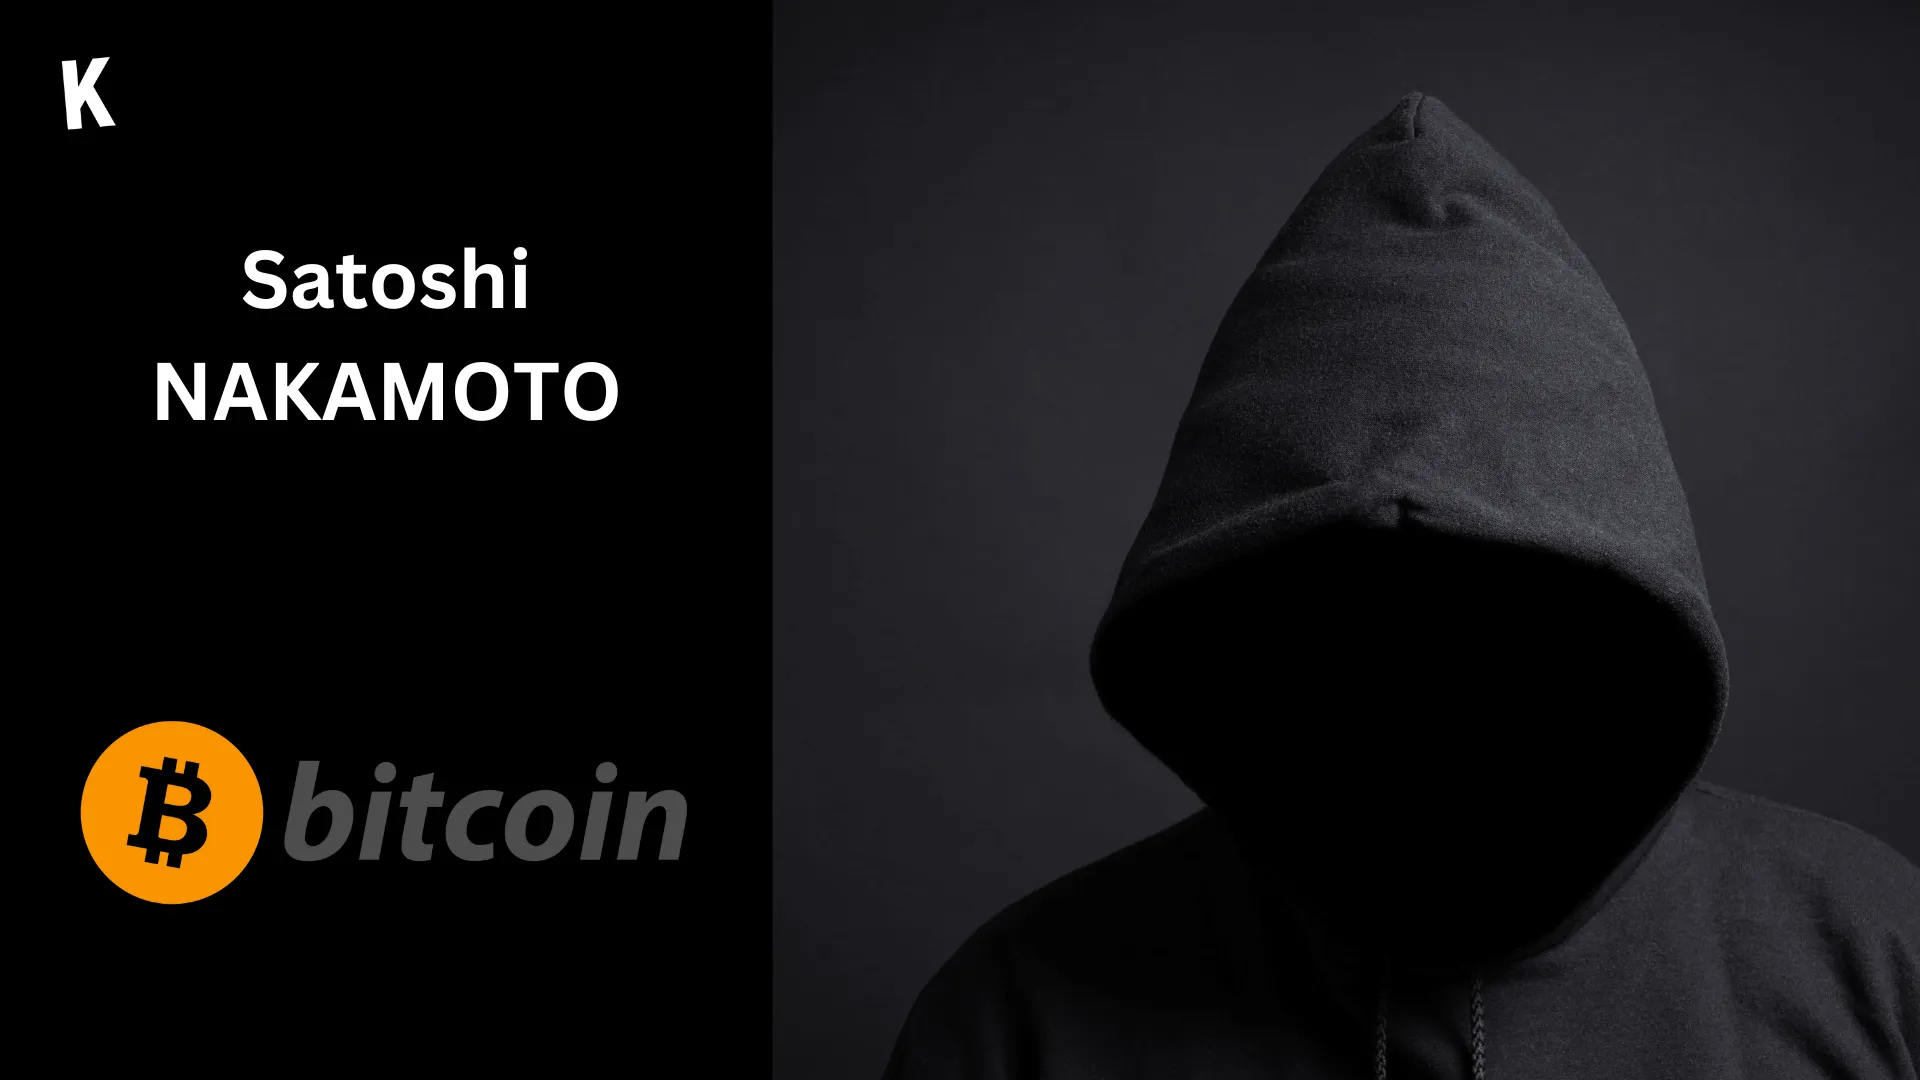 Une personne anonyme pour représenter Satoshi Nakamoto, avec le logo Bitcoin à gauche